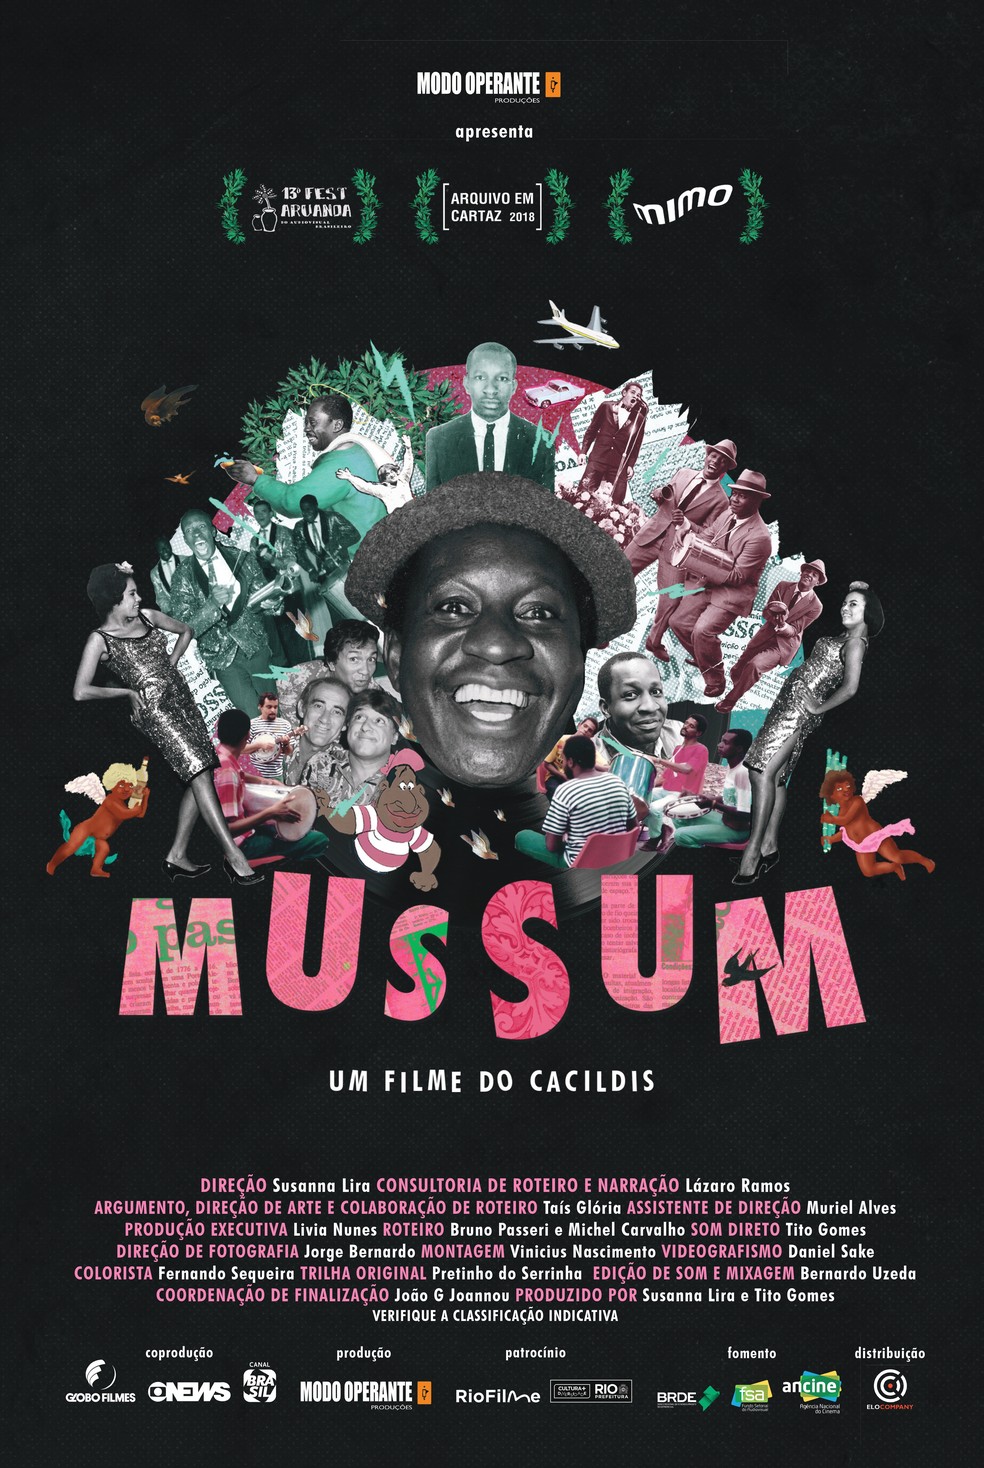 Mussum – Um Filme do Cacildis | Documentário | globofilmes